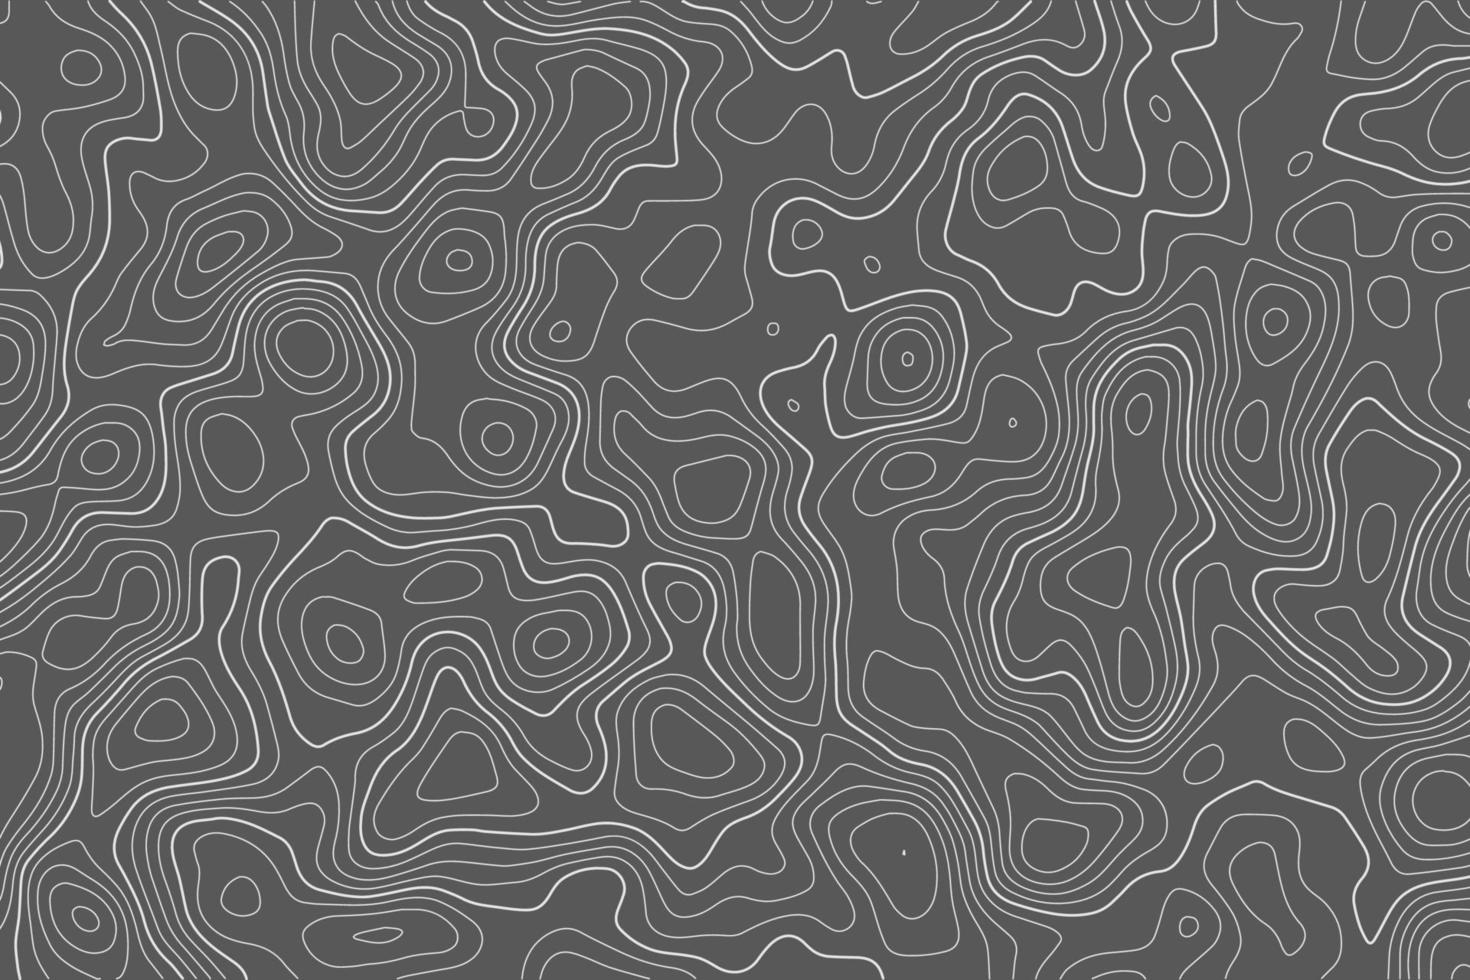 mapa de topografia em fundo preto b. textura de relevo de terreno abstrato de linha de contorno. paisagem geográfica ondulada. ilustração vetorial. vetor